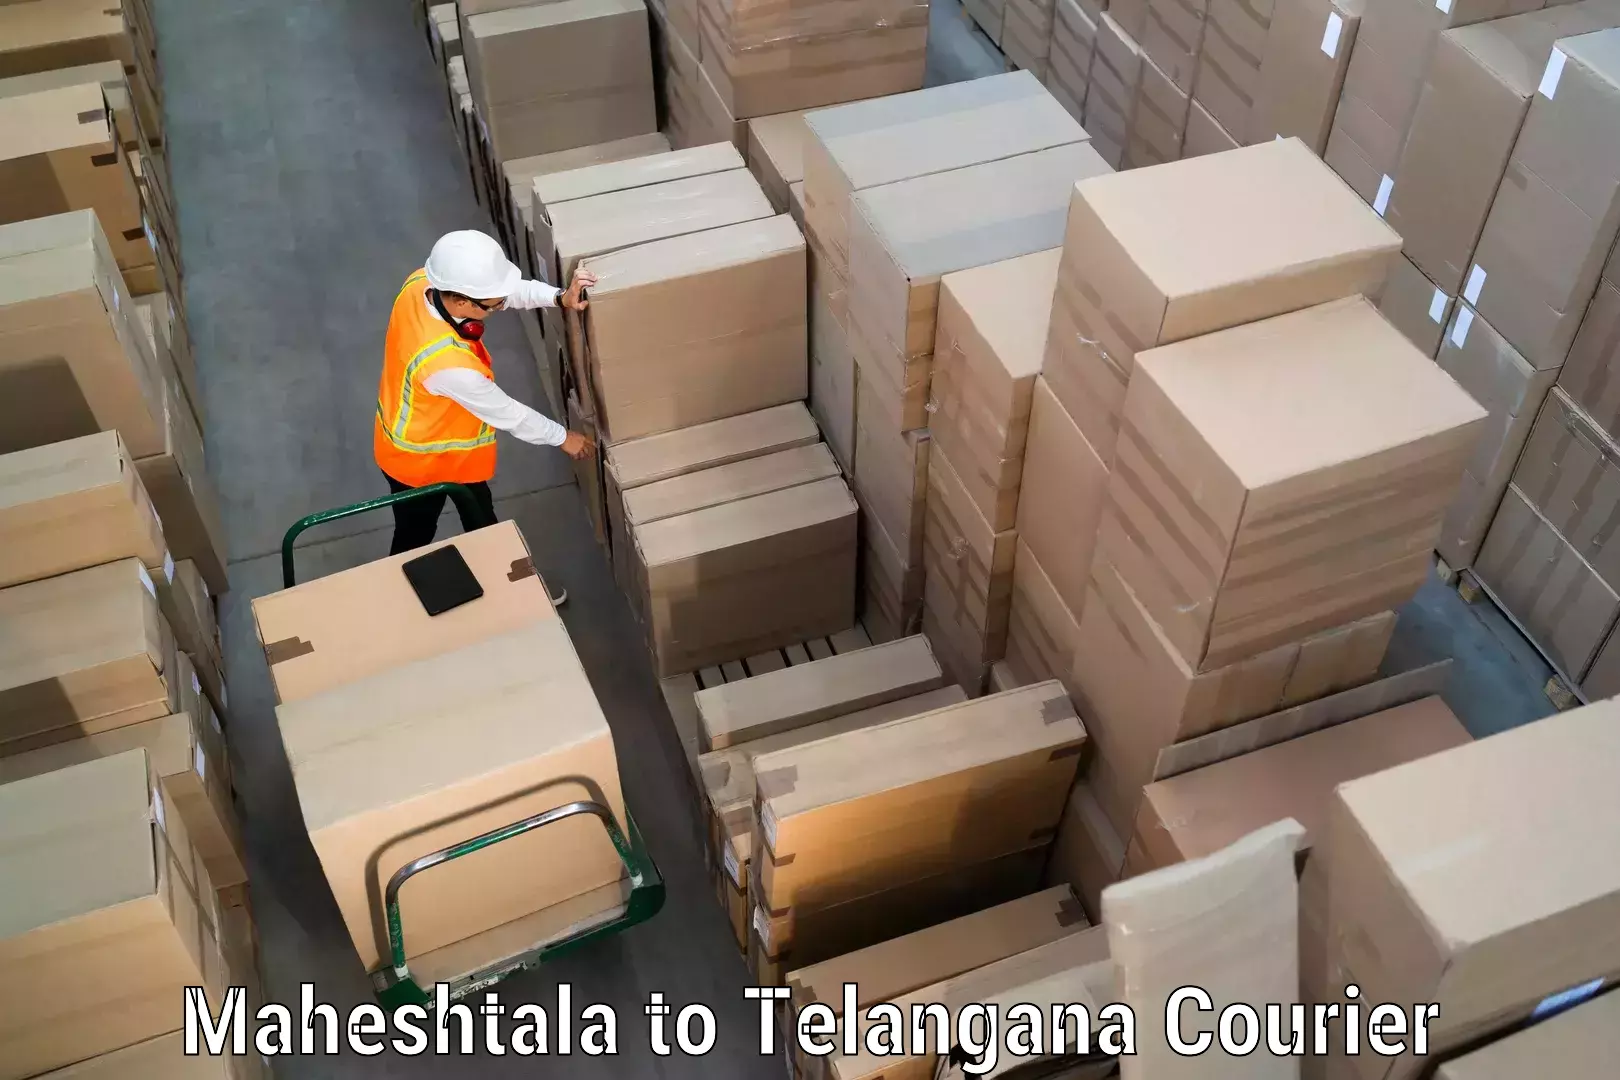 Flexible shipping options Maheshtala to Hyderabad